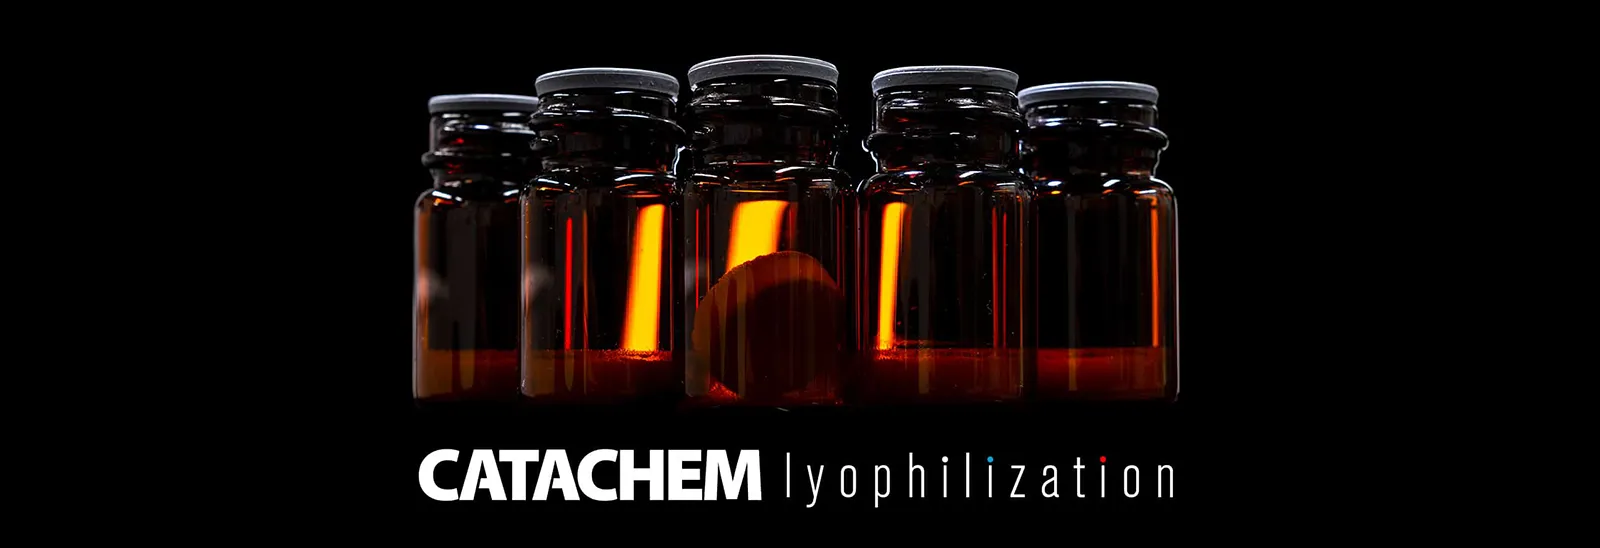 Lyophilization - Catachem